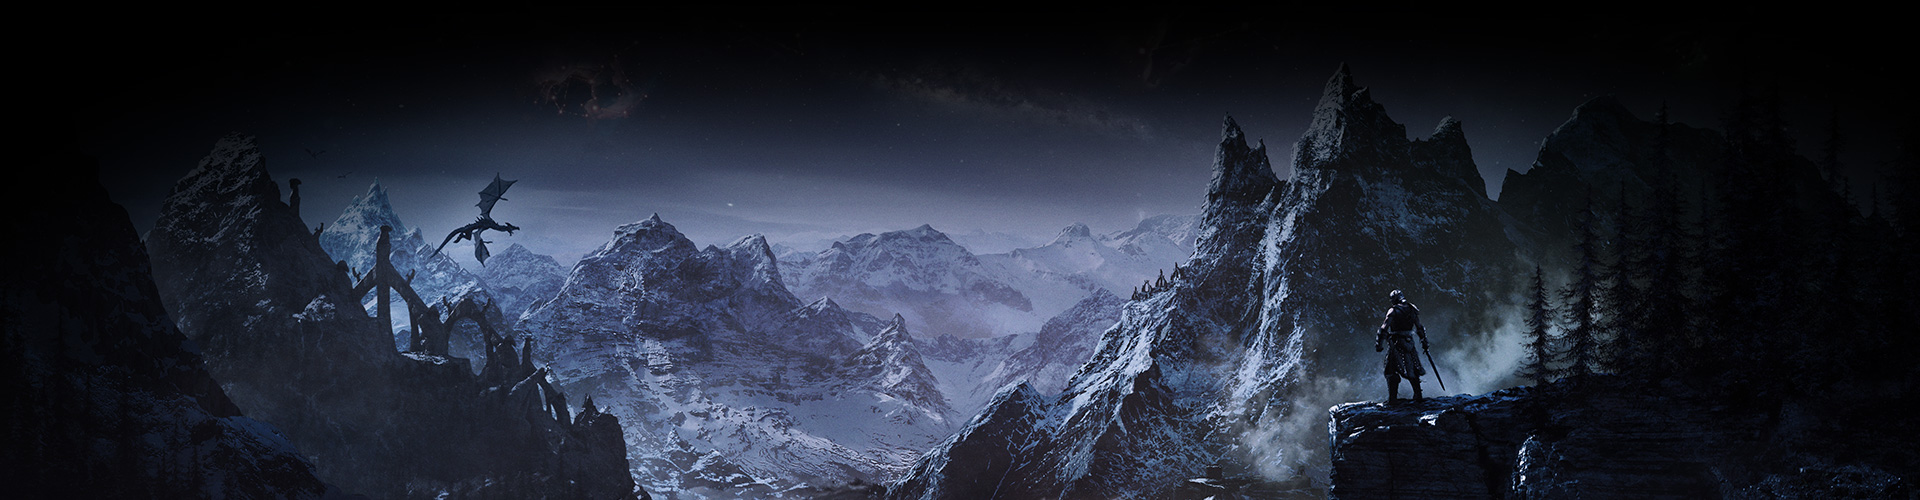 Un personaje mira hacia un valle de montañas nevadas mientras un dragón se eleva